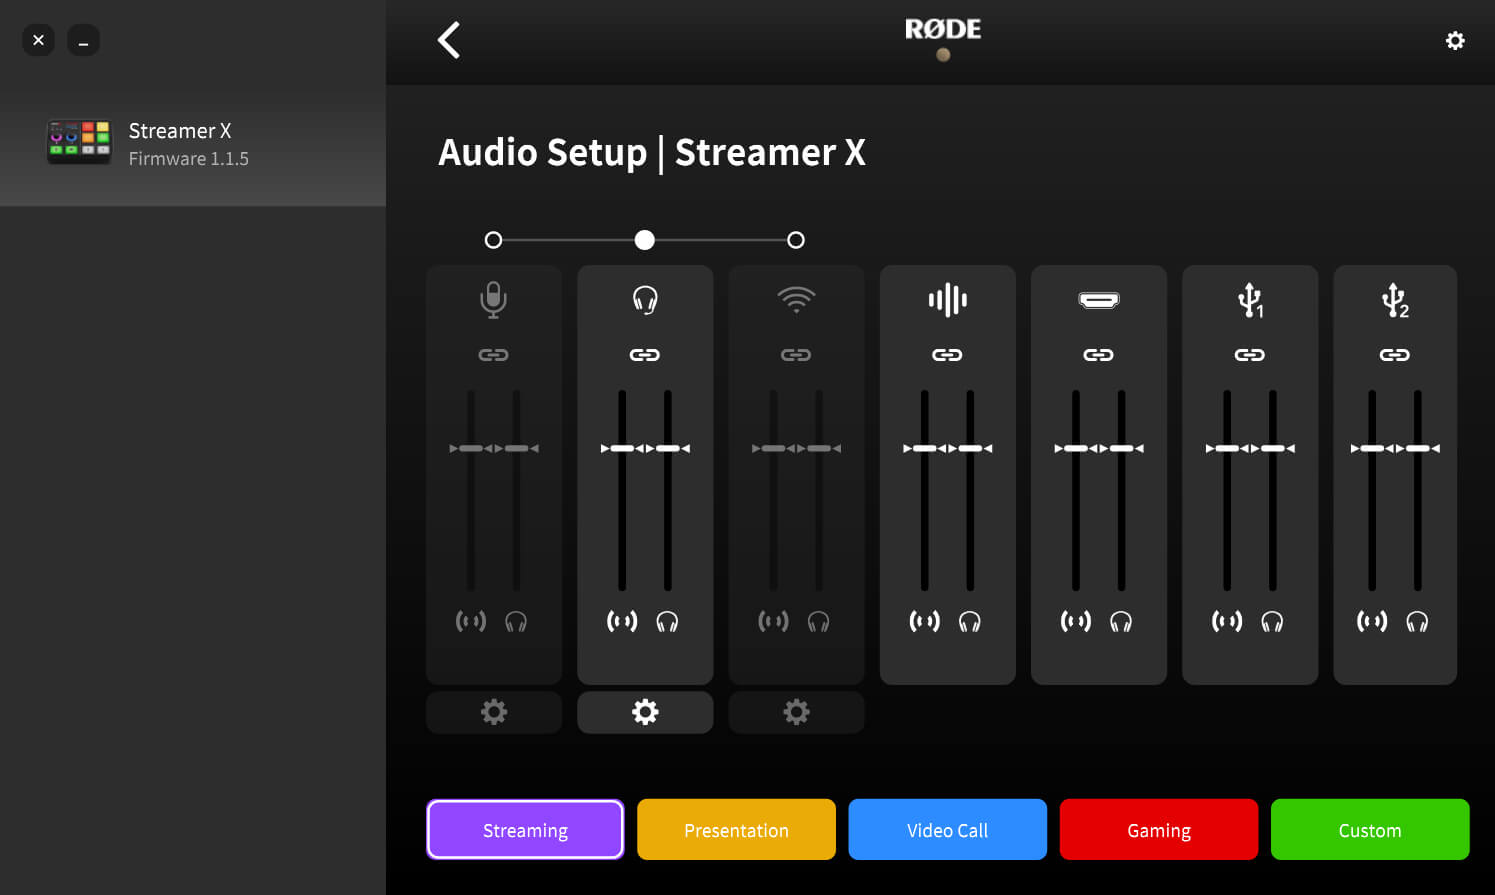 Audio setup for Streamer X in RØDE Central